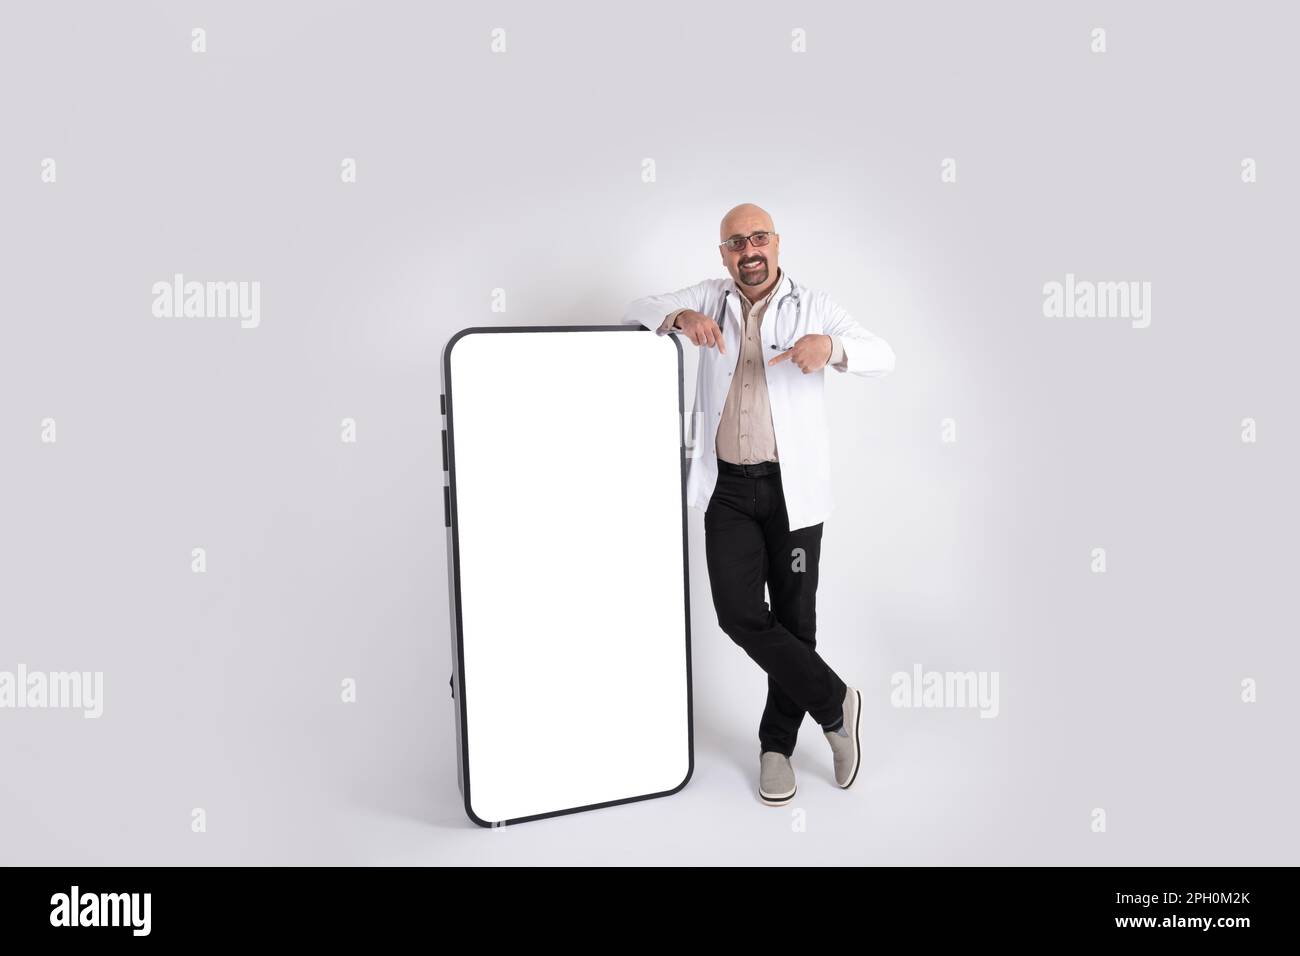 Kahlköpfiger, untergewichtiger, männlicher Arzt, der sich ein großes Telefon Ganzkörperbild eines kahlköpfigen Arztes mittleren Alters mit leerem Bildschirm Smartphone, Modell. Stockfoto